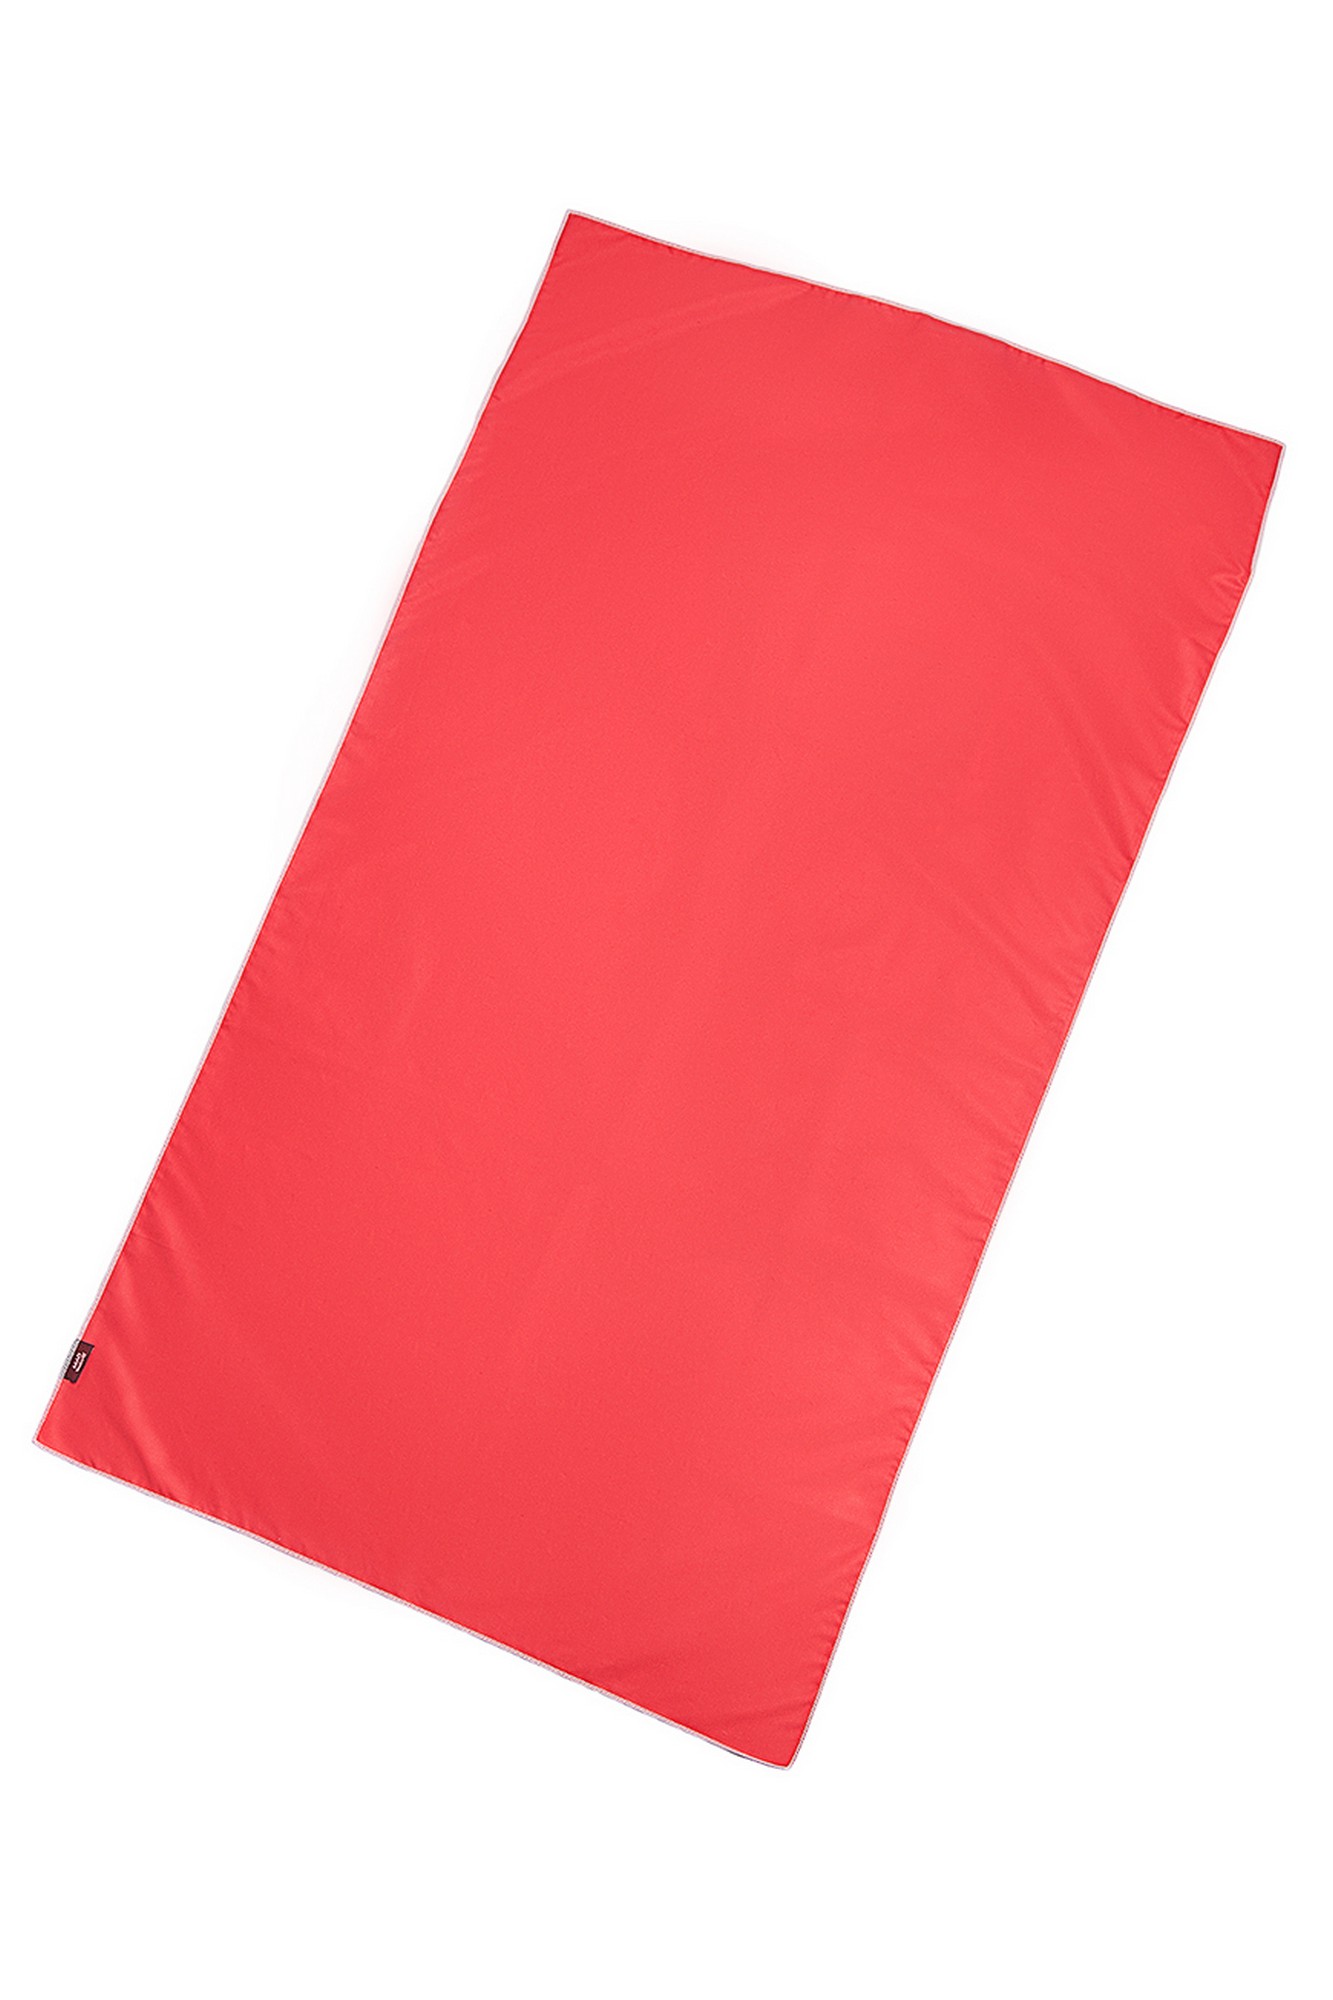 Полотенце из микрофибры Mad Wave Microfiber Towel Husky M0761 02 2 05W красный 1333_2000